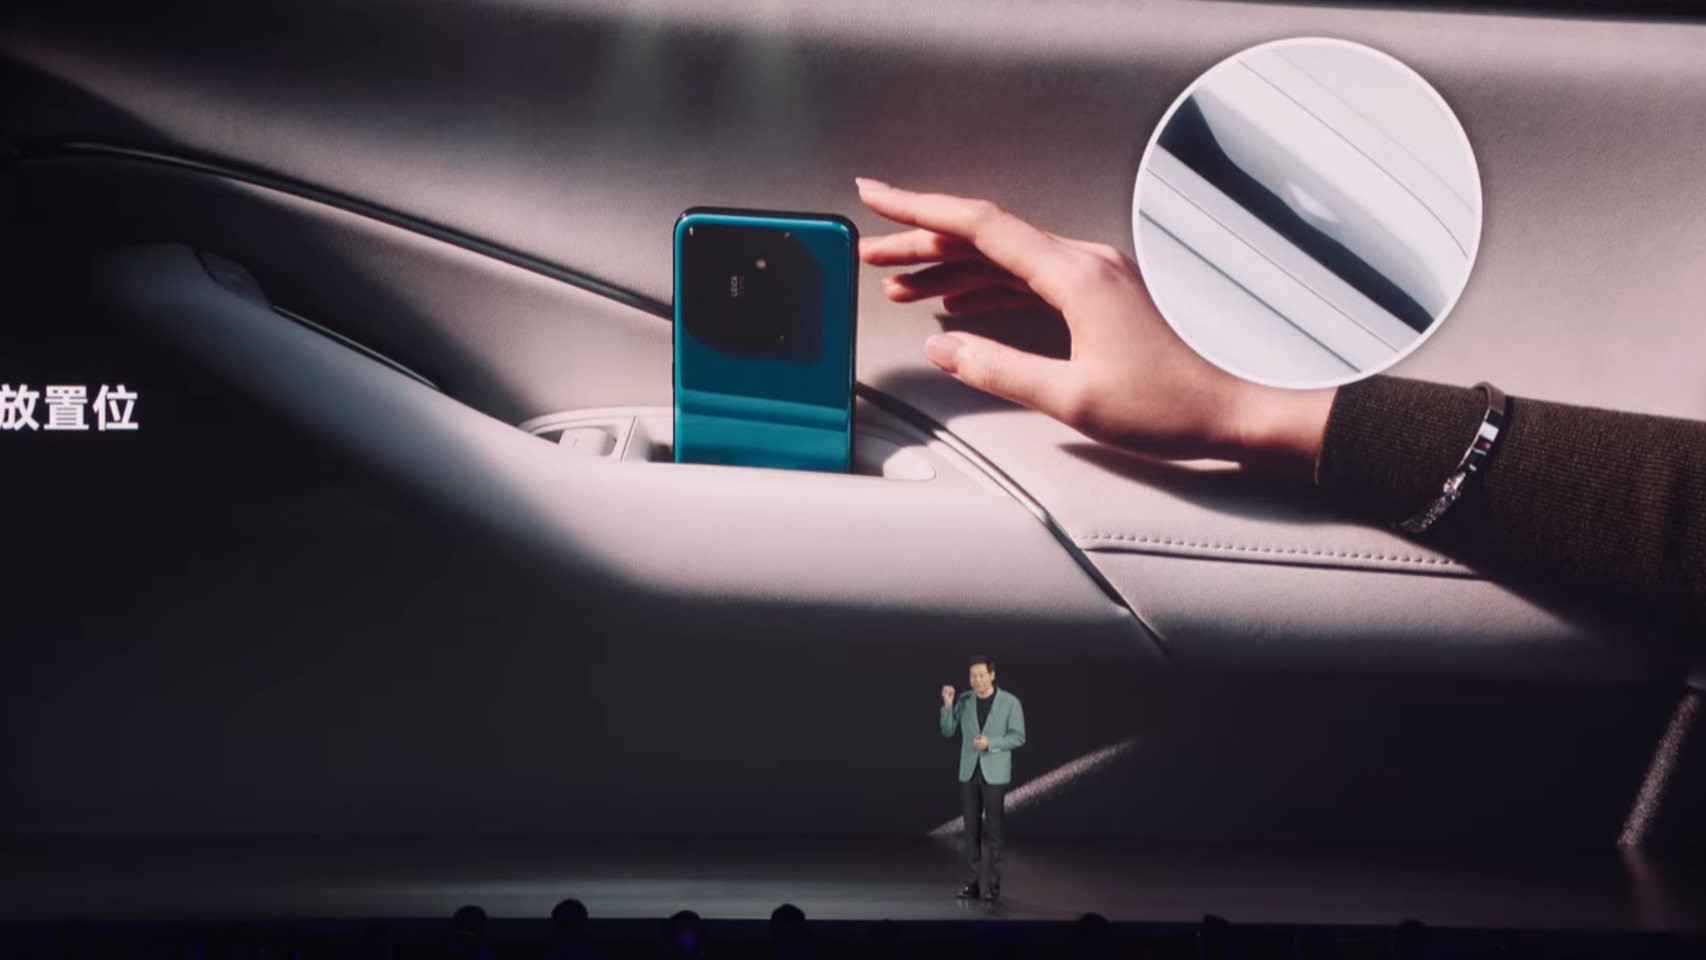 El Xiaomi SU7 es capaz de recargar el móvil dejándolo en un hueco en la puerta